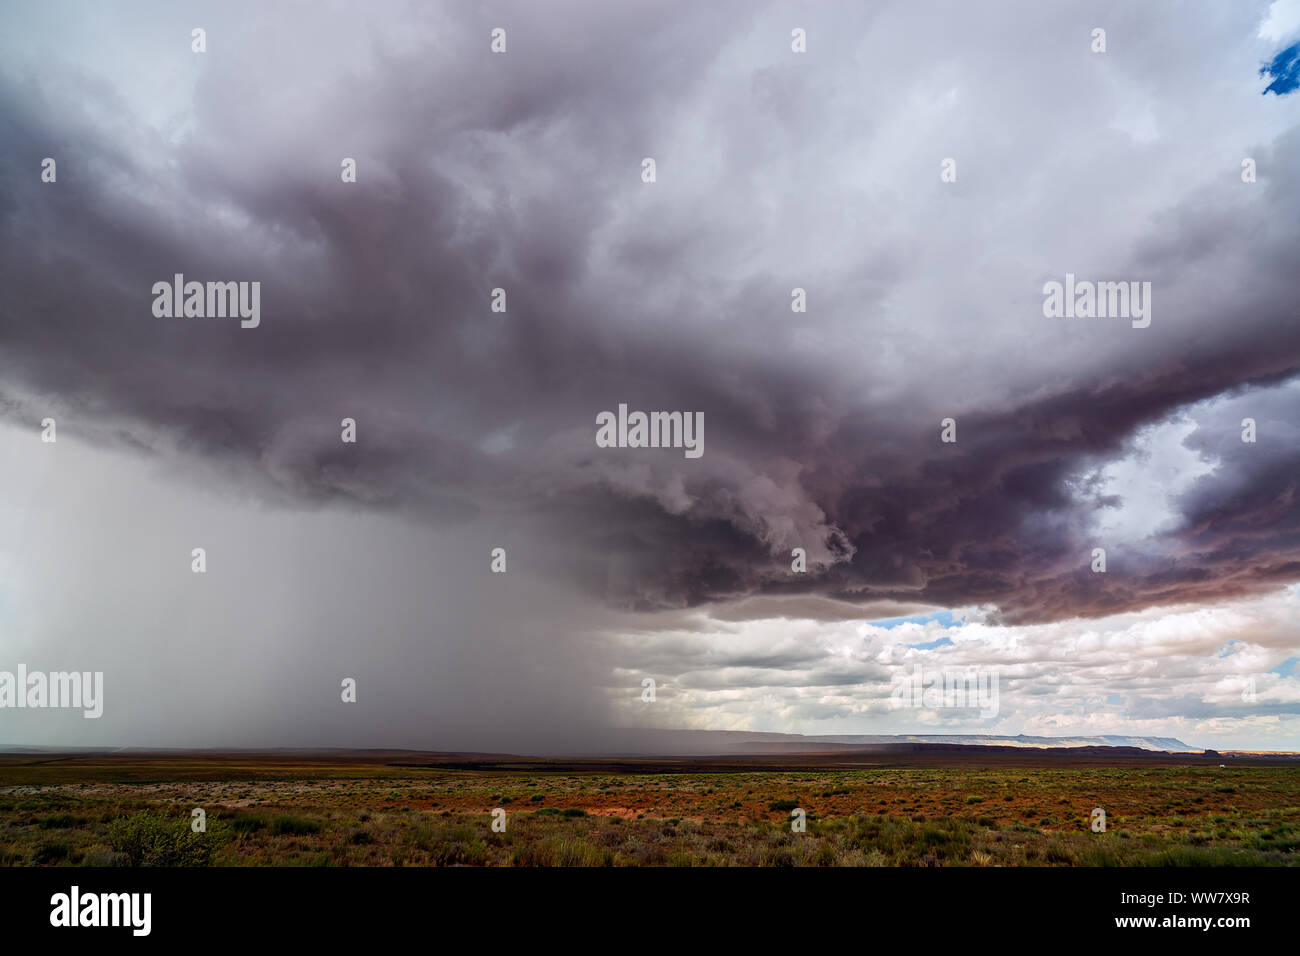 Dramatische Sturmwolken ziehen durch die Wüste, während ein Monsunwetter starken Regen in der Nähe von Chinle, Arizona, abgibt Stockfoto